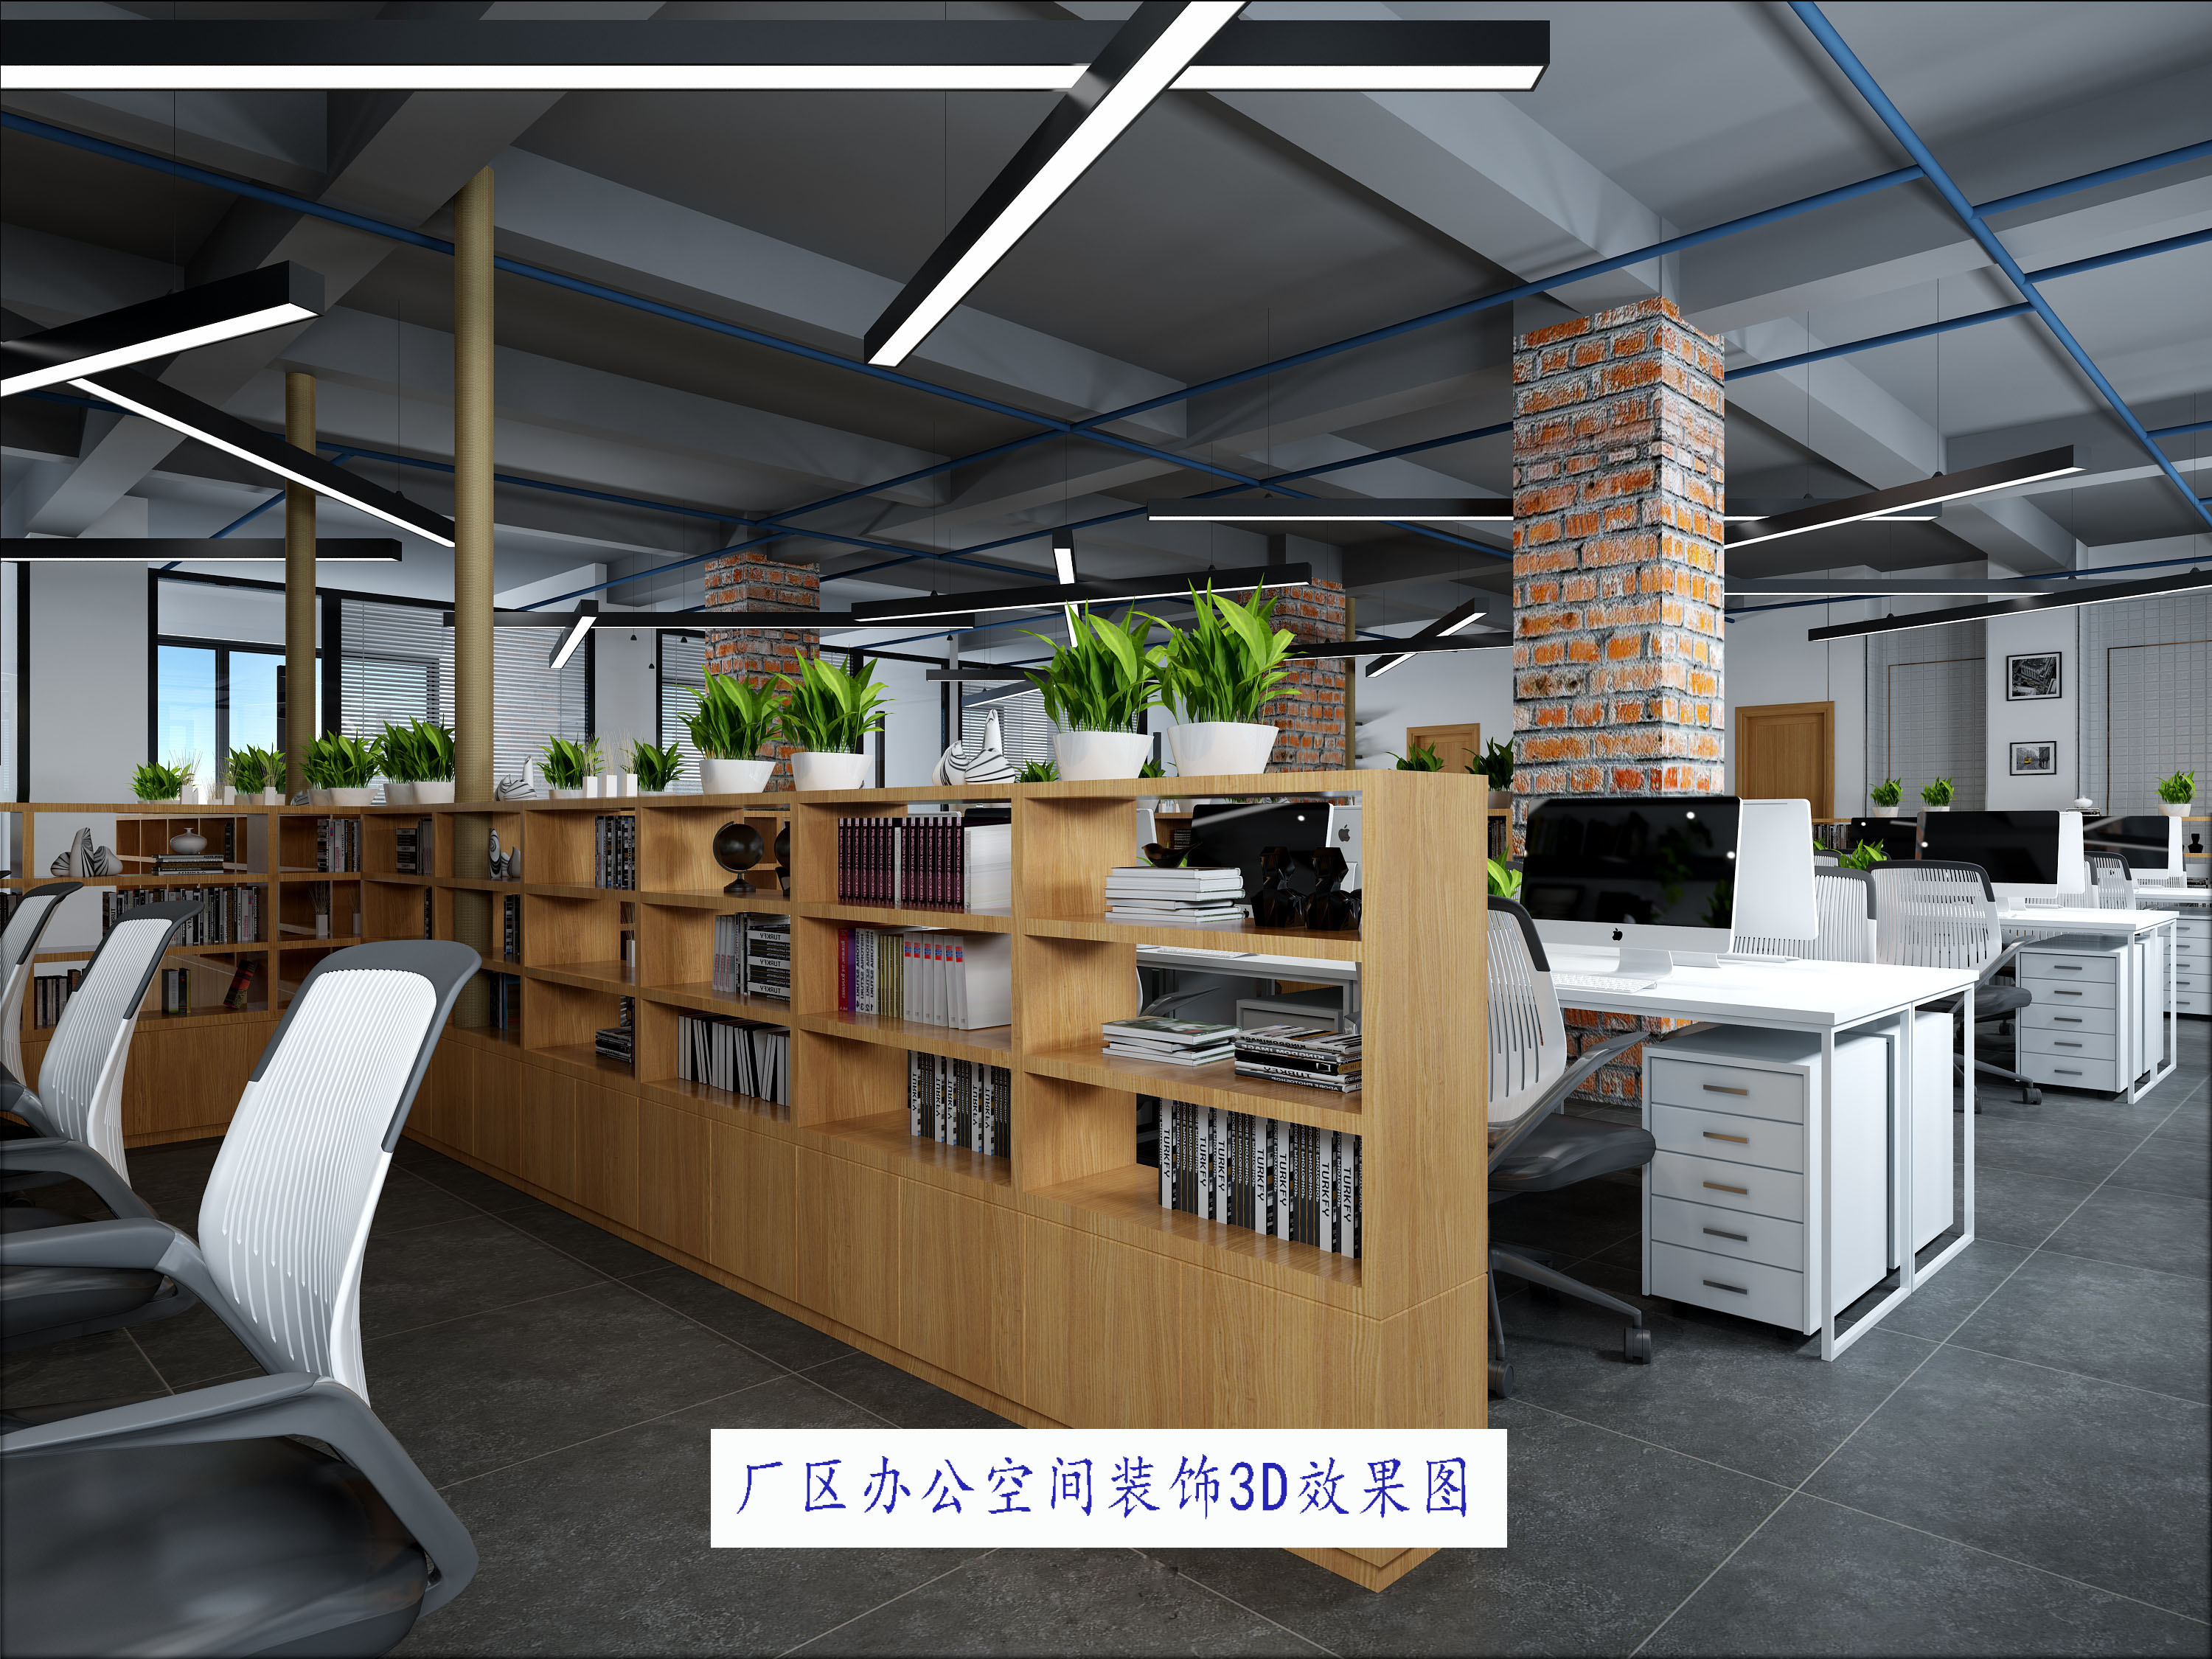 专业室内设计、办公室效果图、施工图  广州平面设计公司  广州办公室效果图报价